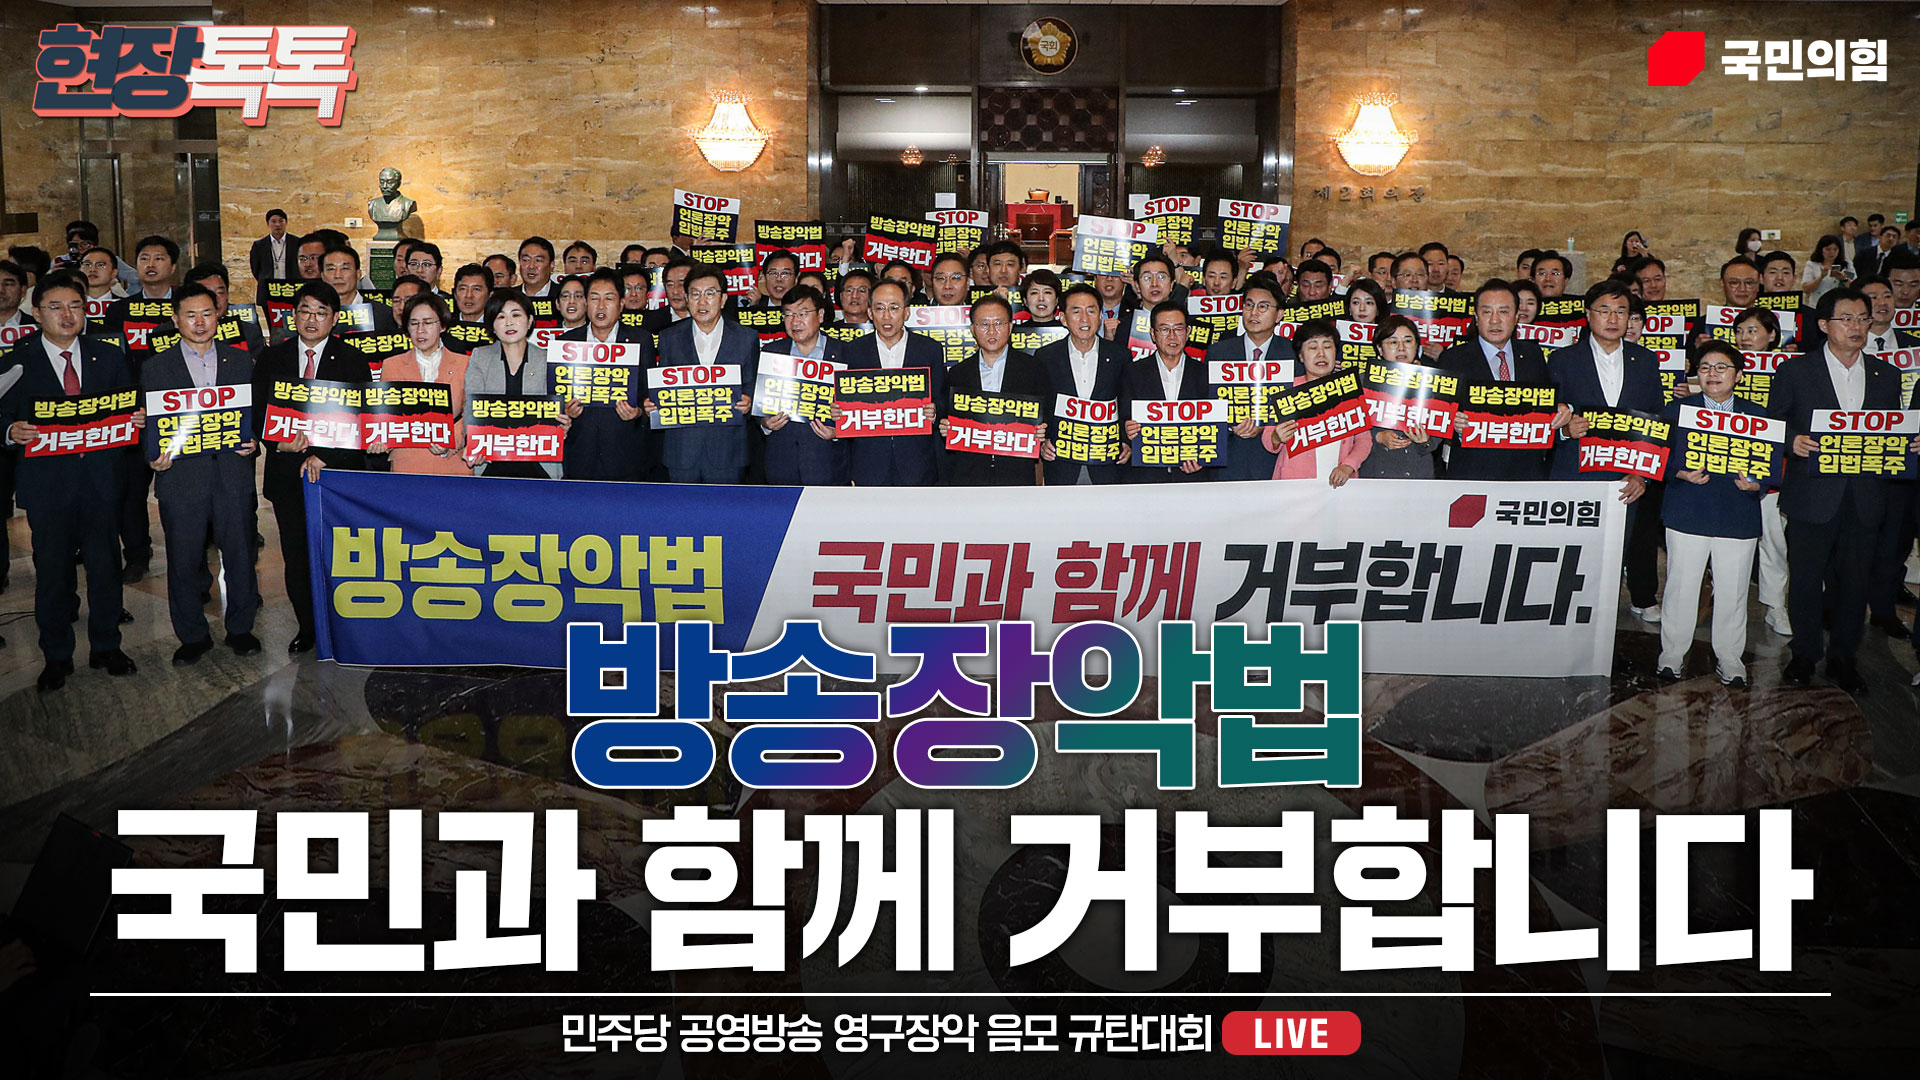 [Live] 7월 25일 민주당 공영방송 영구장악 음모 규탄대회